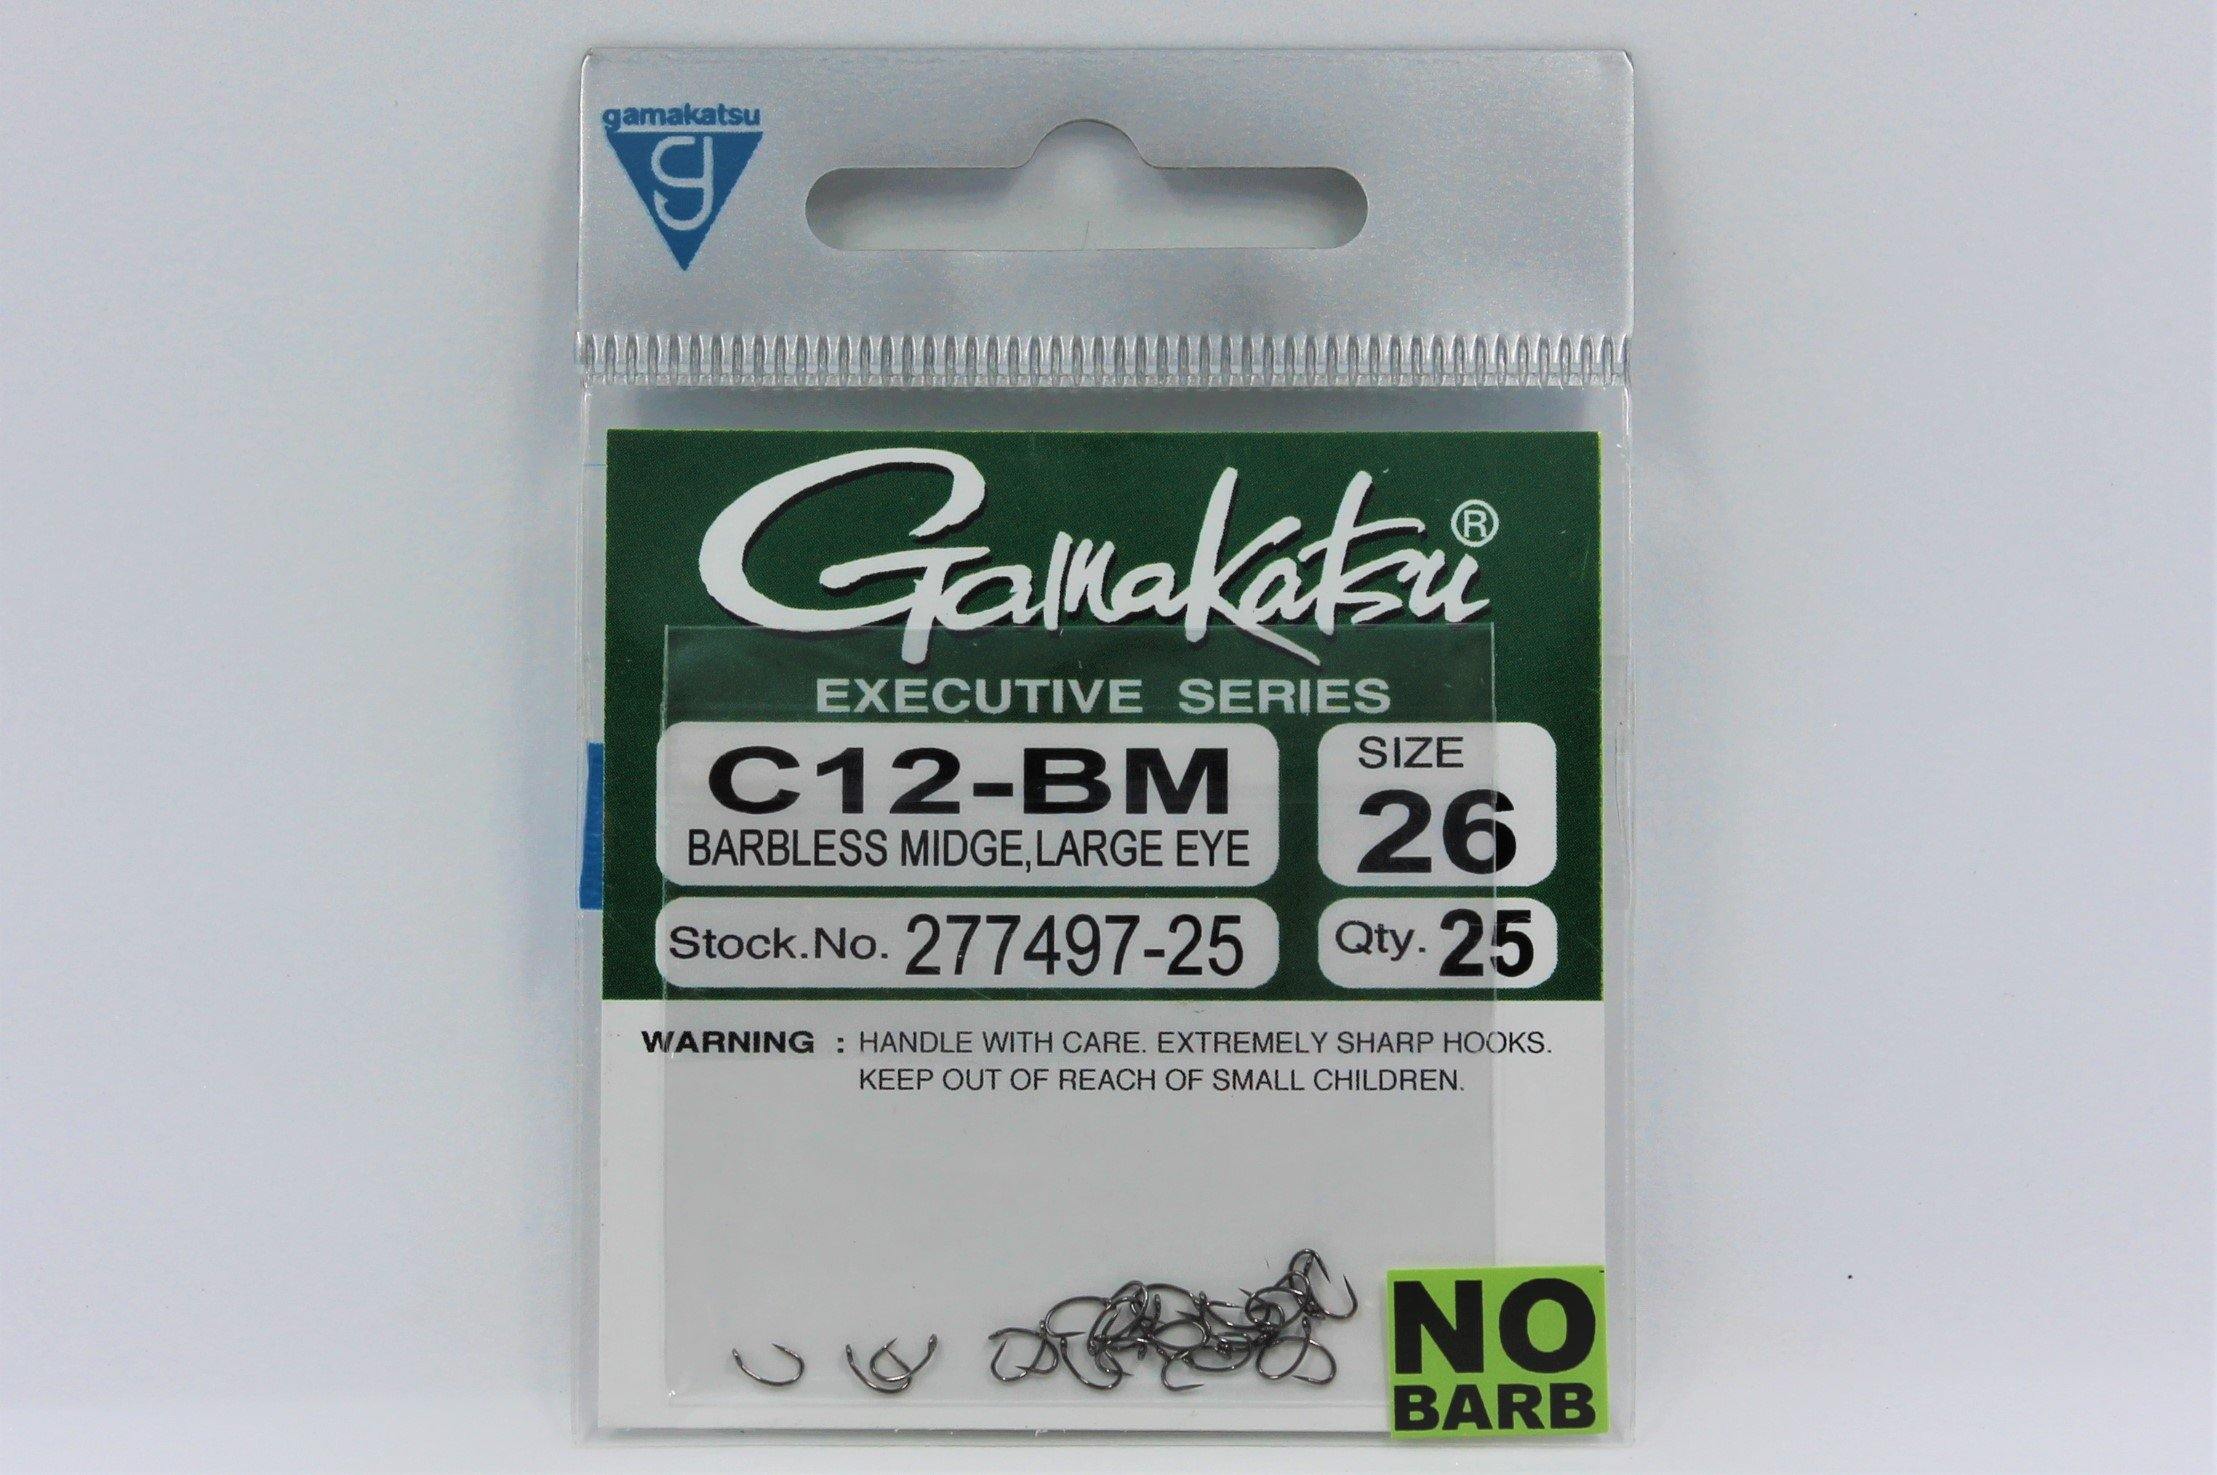 Gamakatsu C12-BM Large Eye Barbless Midge Hook 28